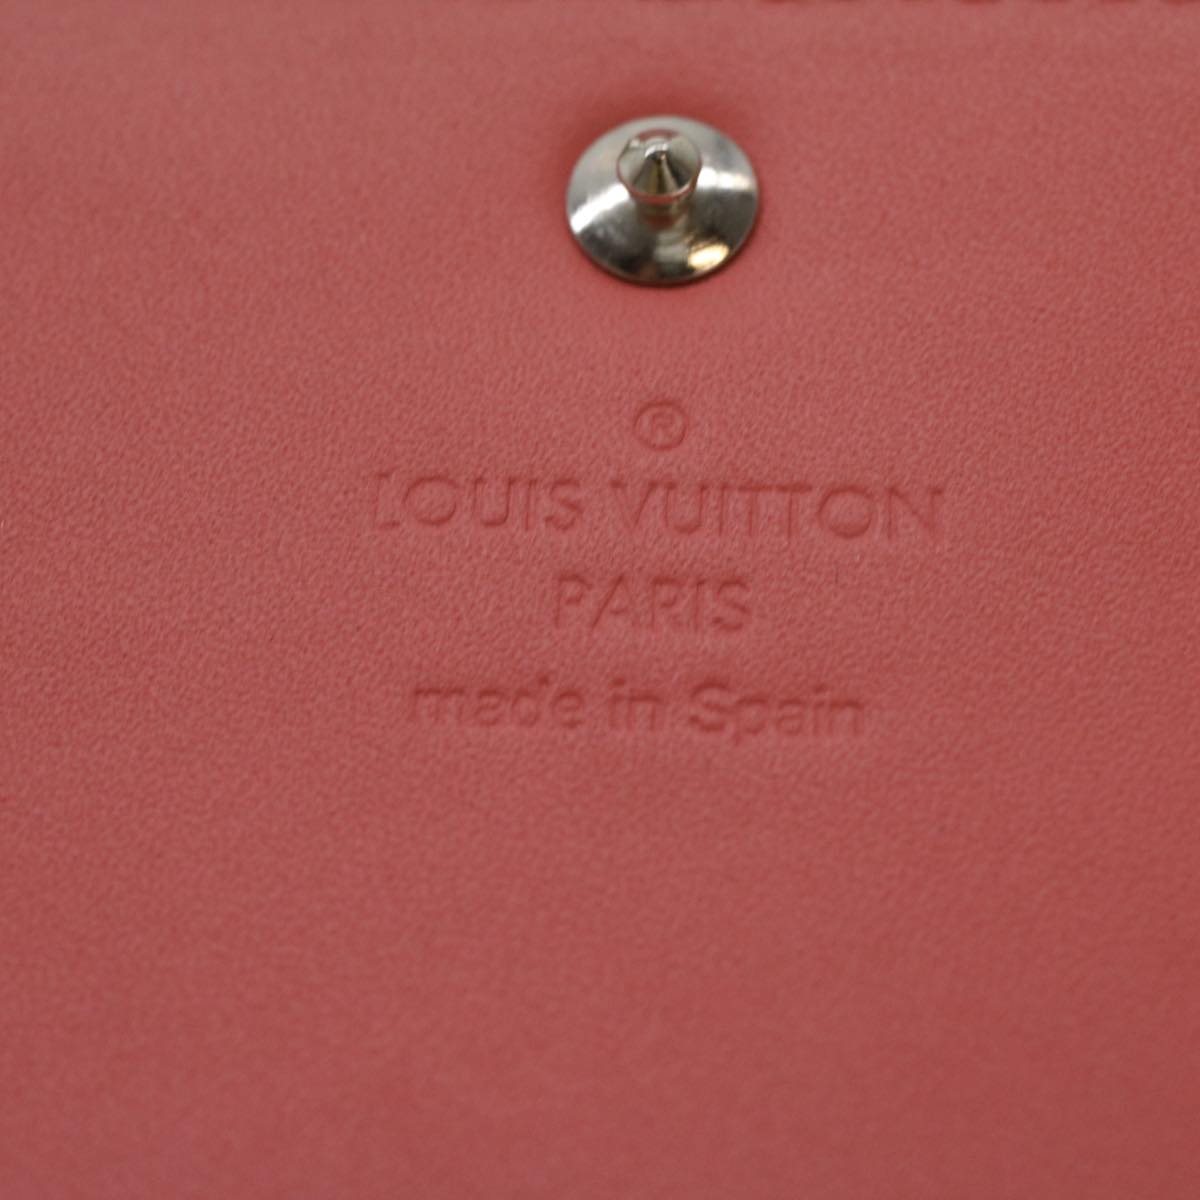 LOUIS VUITTON Vernis Amberop Cartes de Visit Card Case Pink M90936 LV Auth 37343